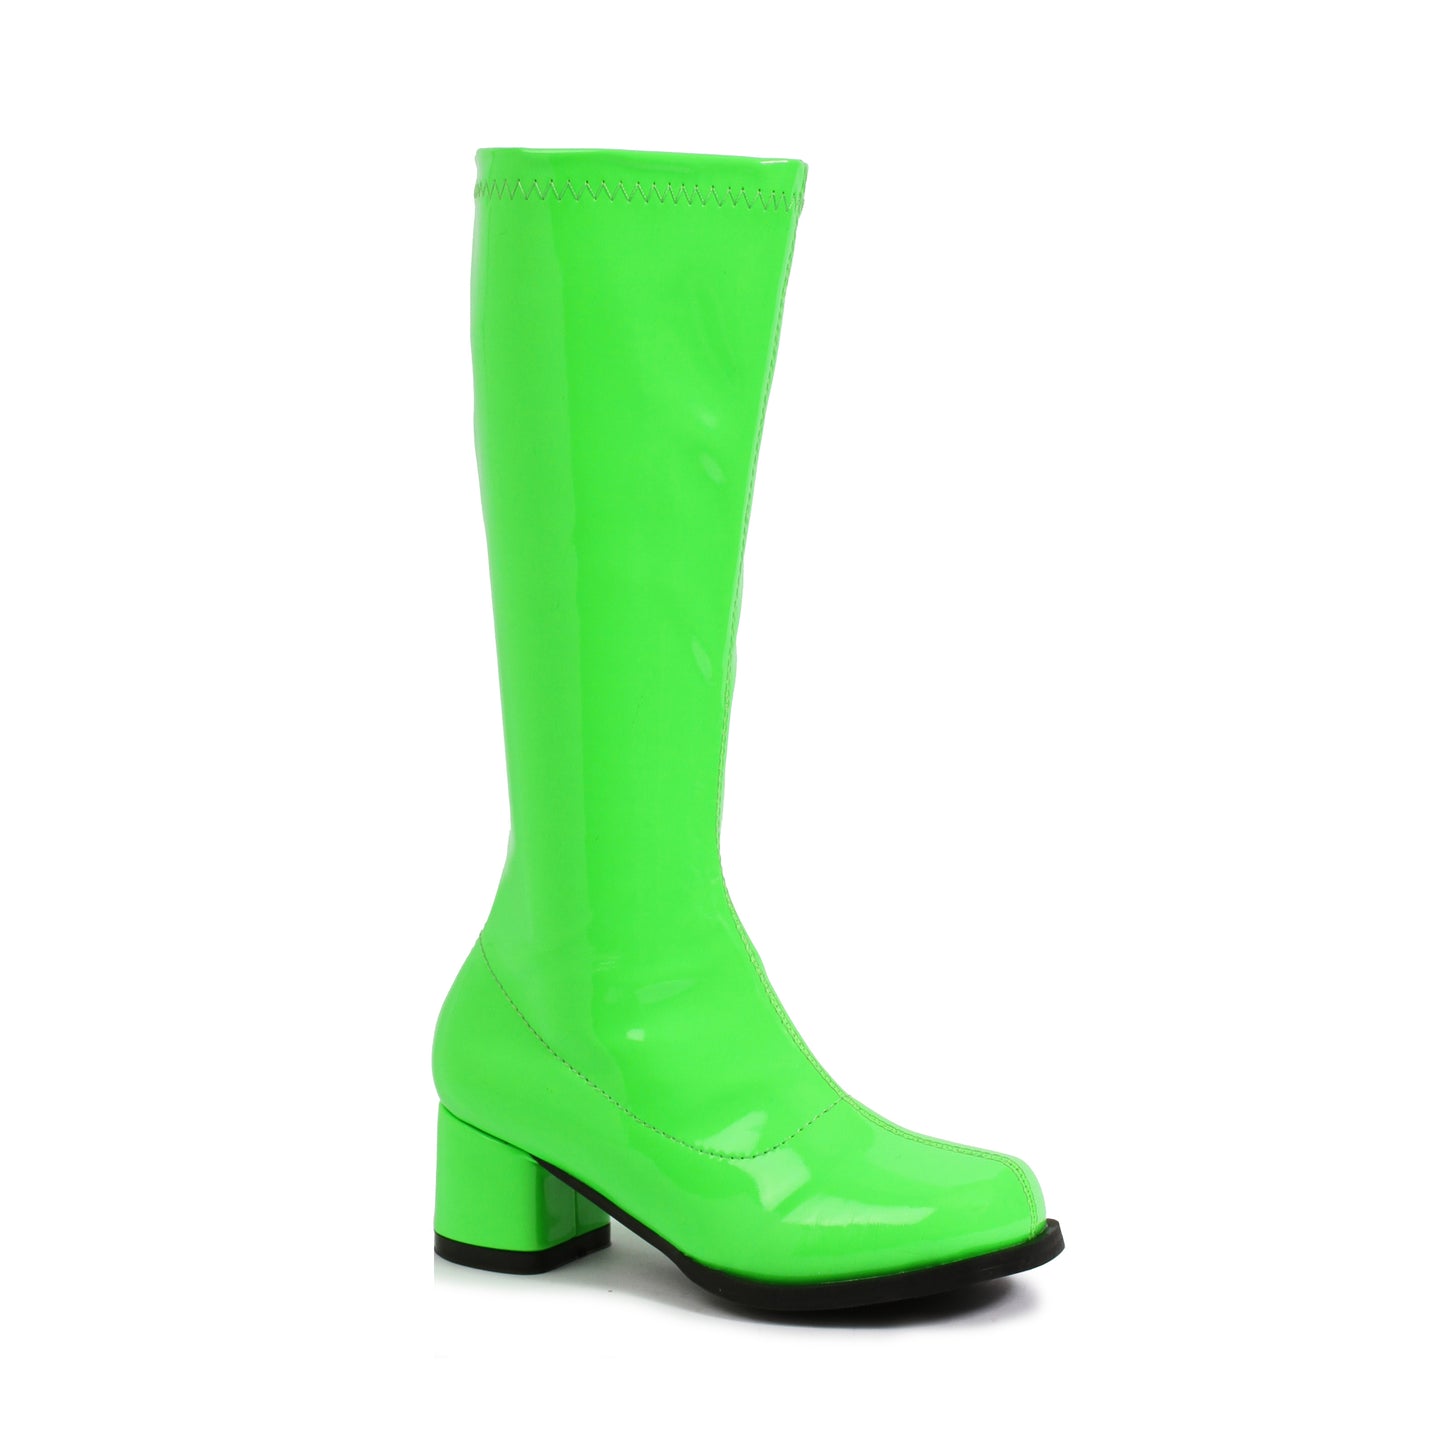 175-DORA-N 1031 Shoes 1.75" Heel Children's Neon Gogo Boot. KNEE HIGH